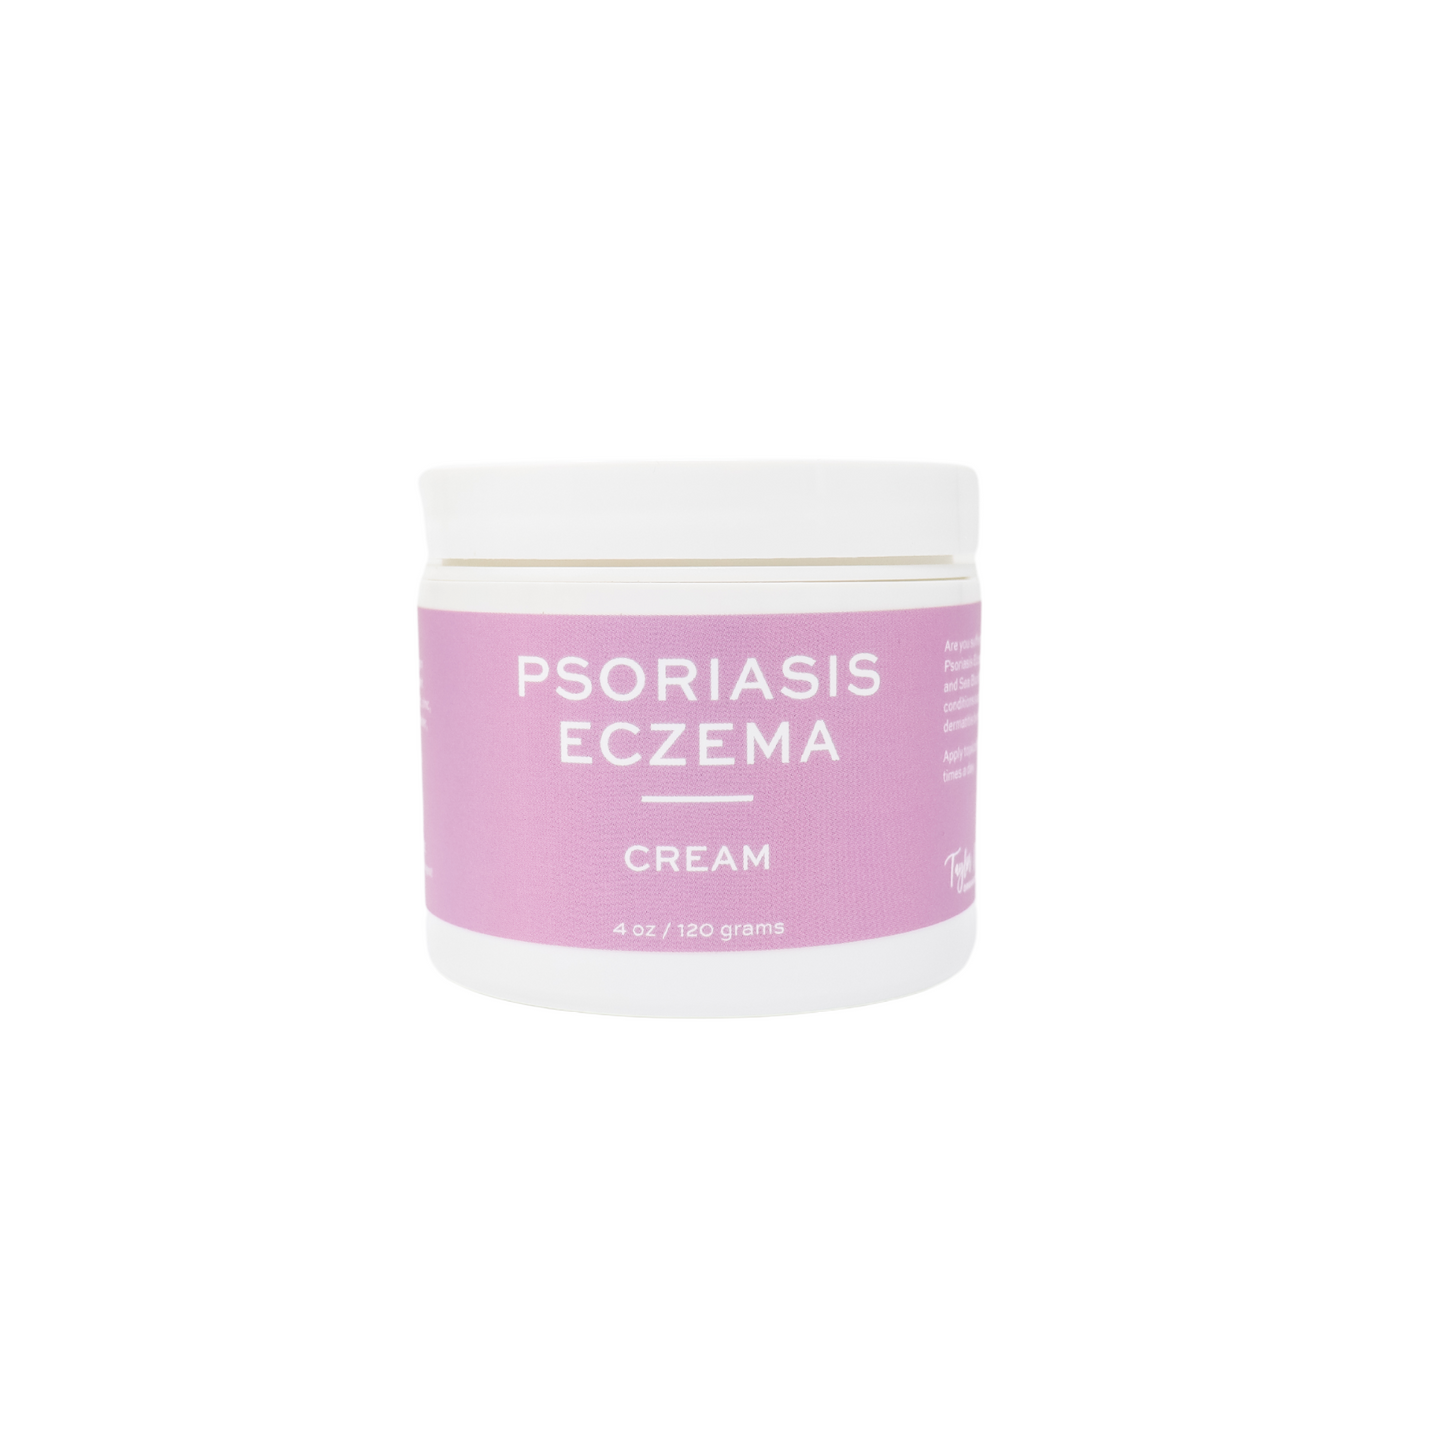 psoriasis eczema cream | taylor made organics